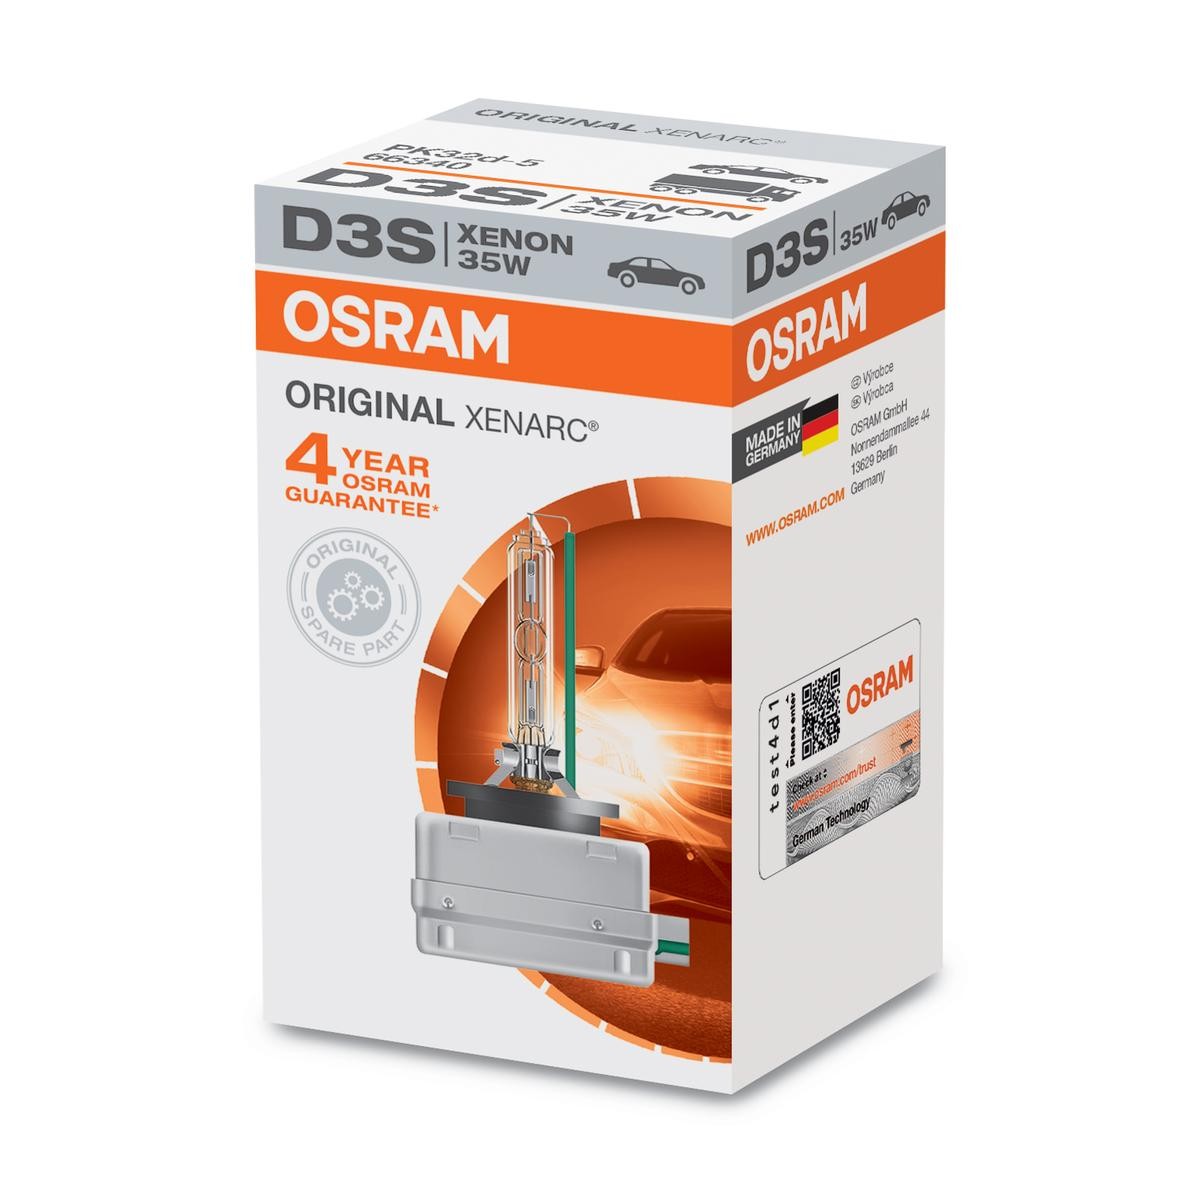 D3S OSRAM XENARC ORIGINAL D3S (gasurladdningslampa) 42V 35W PK32d-5 4500K Xenon Glödlampa, fjärrstrålkastare 66340 köp lågt pris